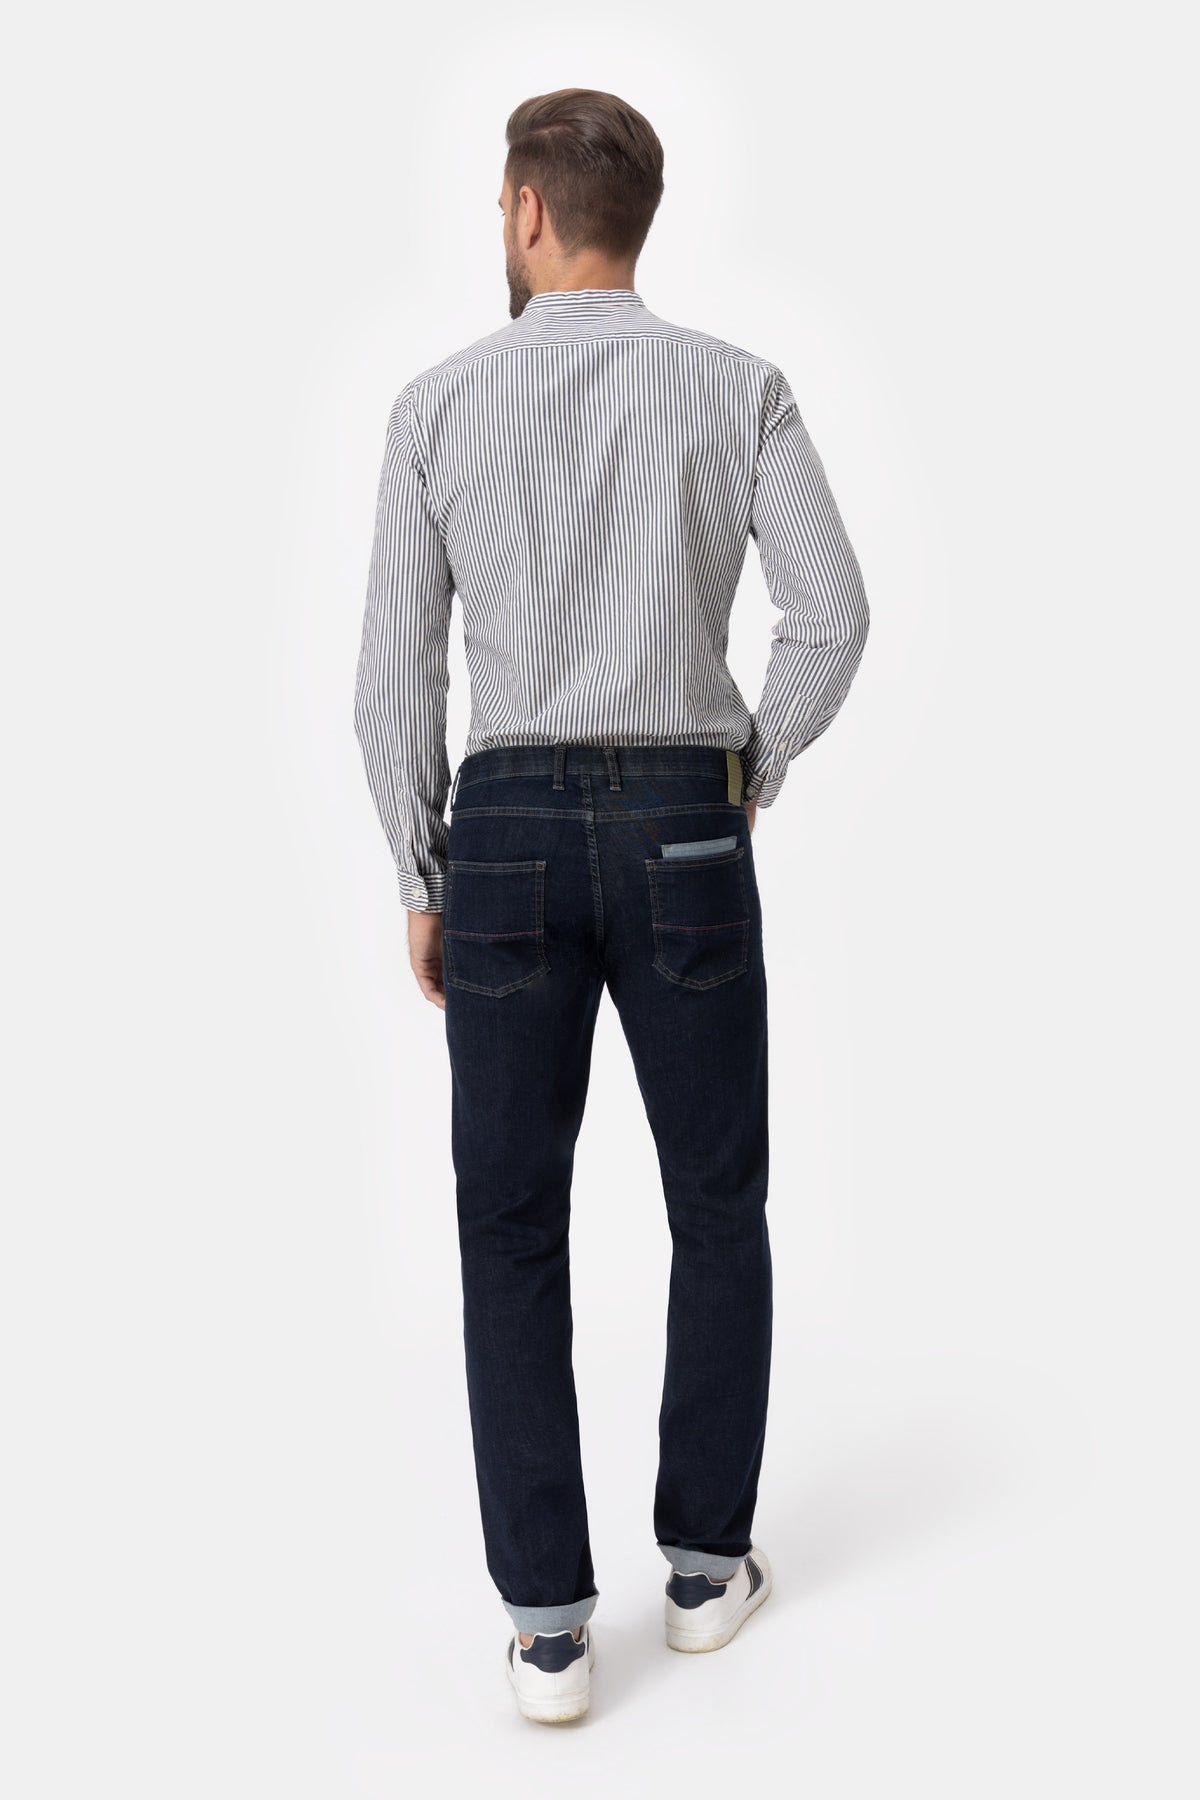 Mauri Sn02 Jeans in denim di cotone stretch